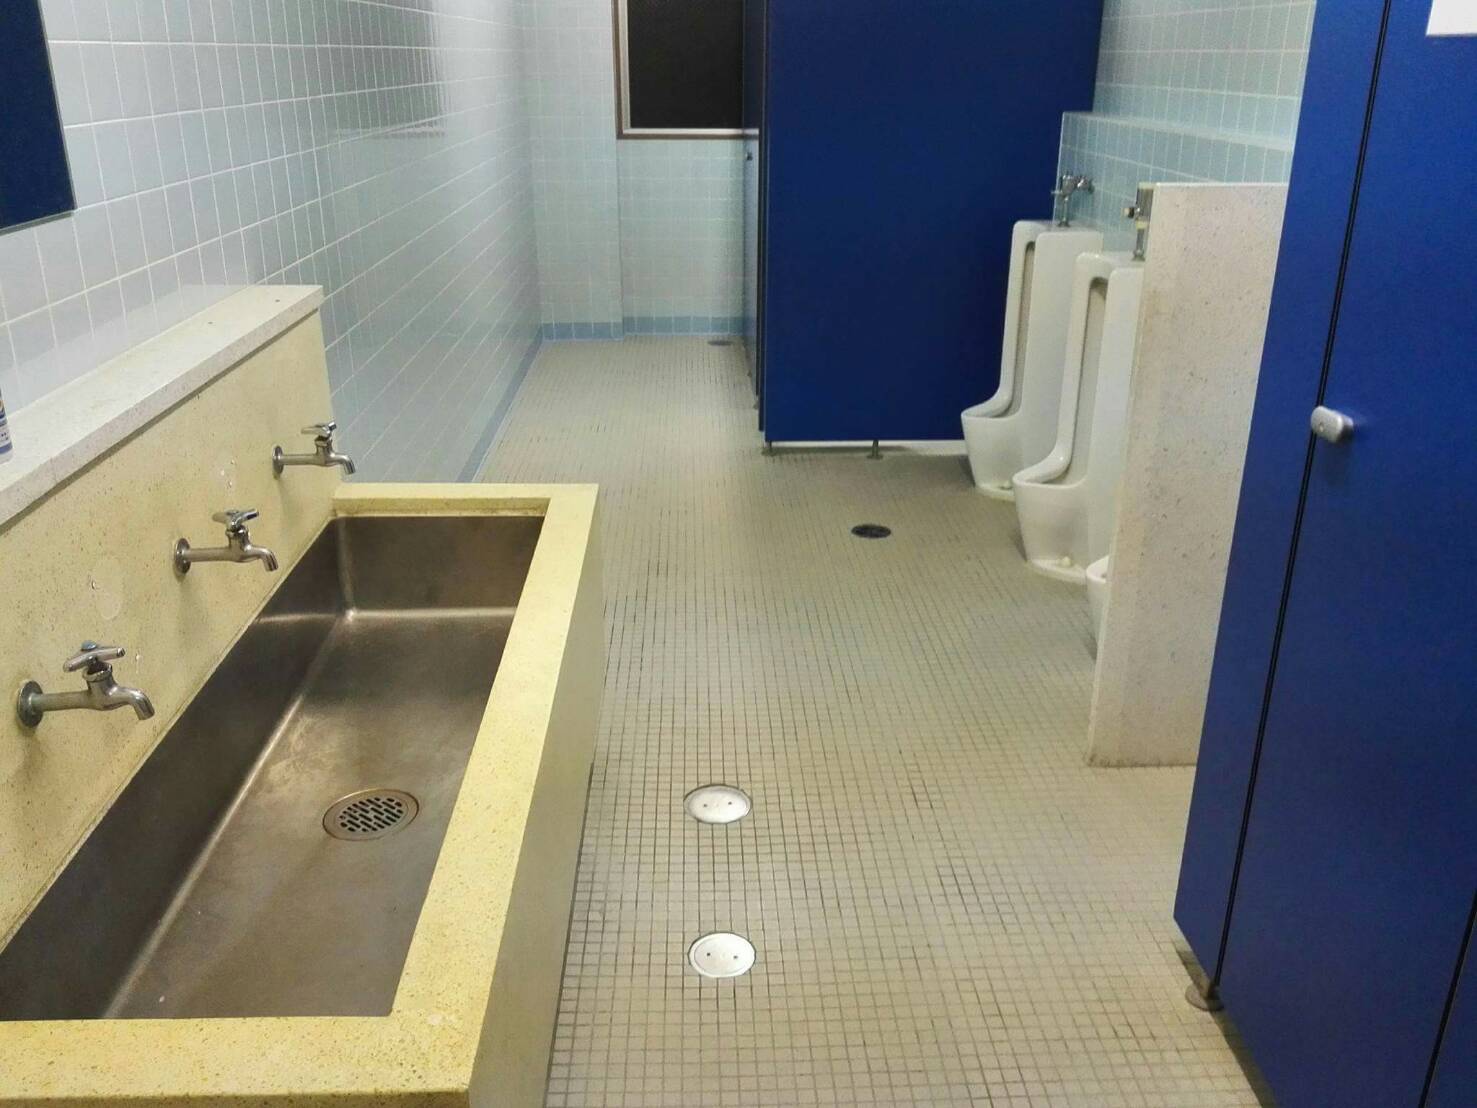 大型建物のトイレ改修工事 始まる 日拓ハウジング